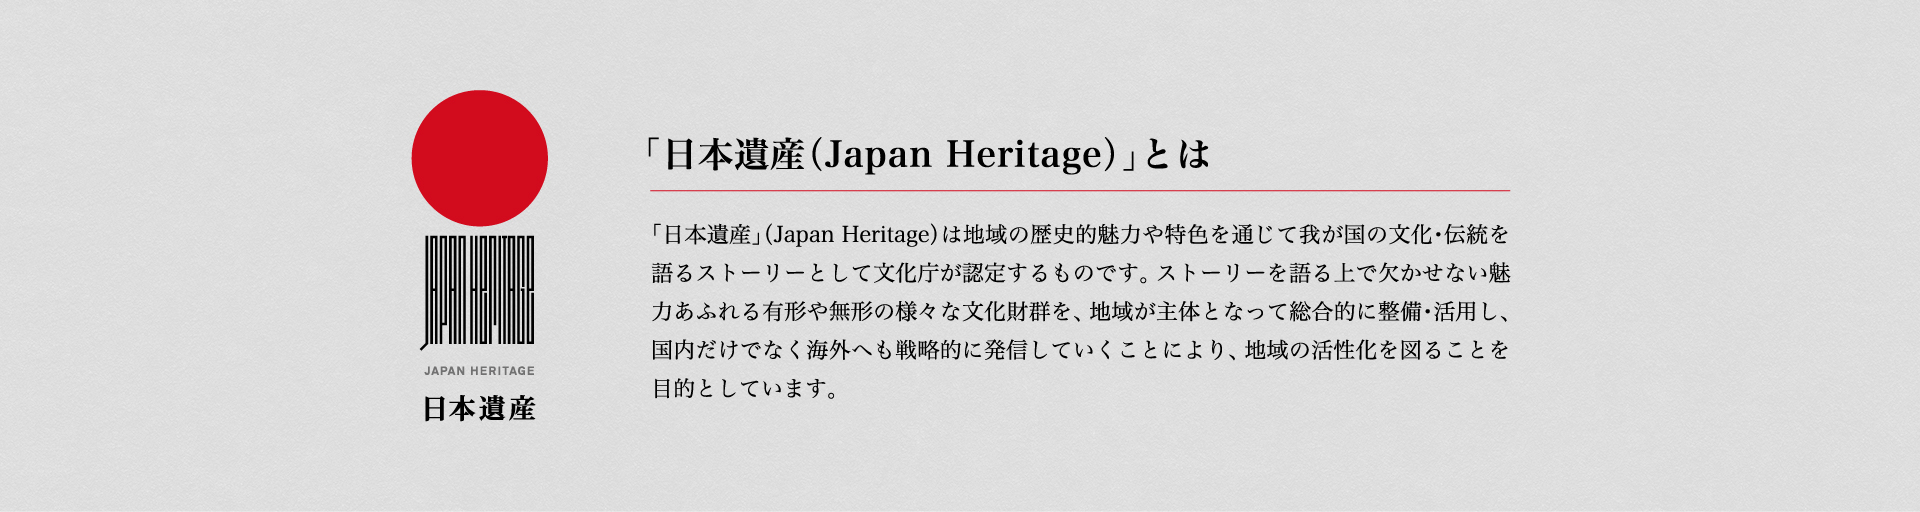 「日本遺産」とは地域の歴史的魅力や特色を通じて我が国の文化・伝統を語るストーリーとして文化庁が認定するものです。ストーリーを語る上で欠かせない魅力あふれる有形や無形の様々な文化財群を、地域が主体となって総合的に整備・活用し、国内だけでなく海外へも戦略的に発信していくことにより、地域の活性化を図ることを目的としています。